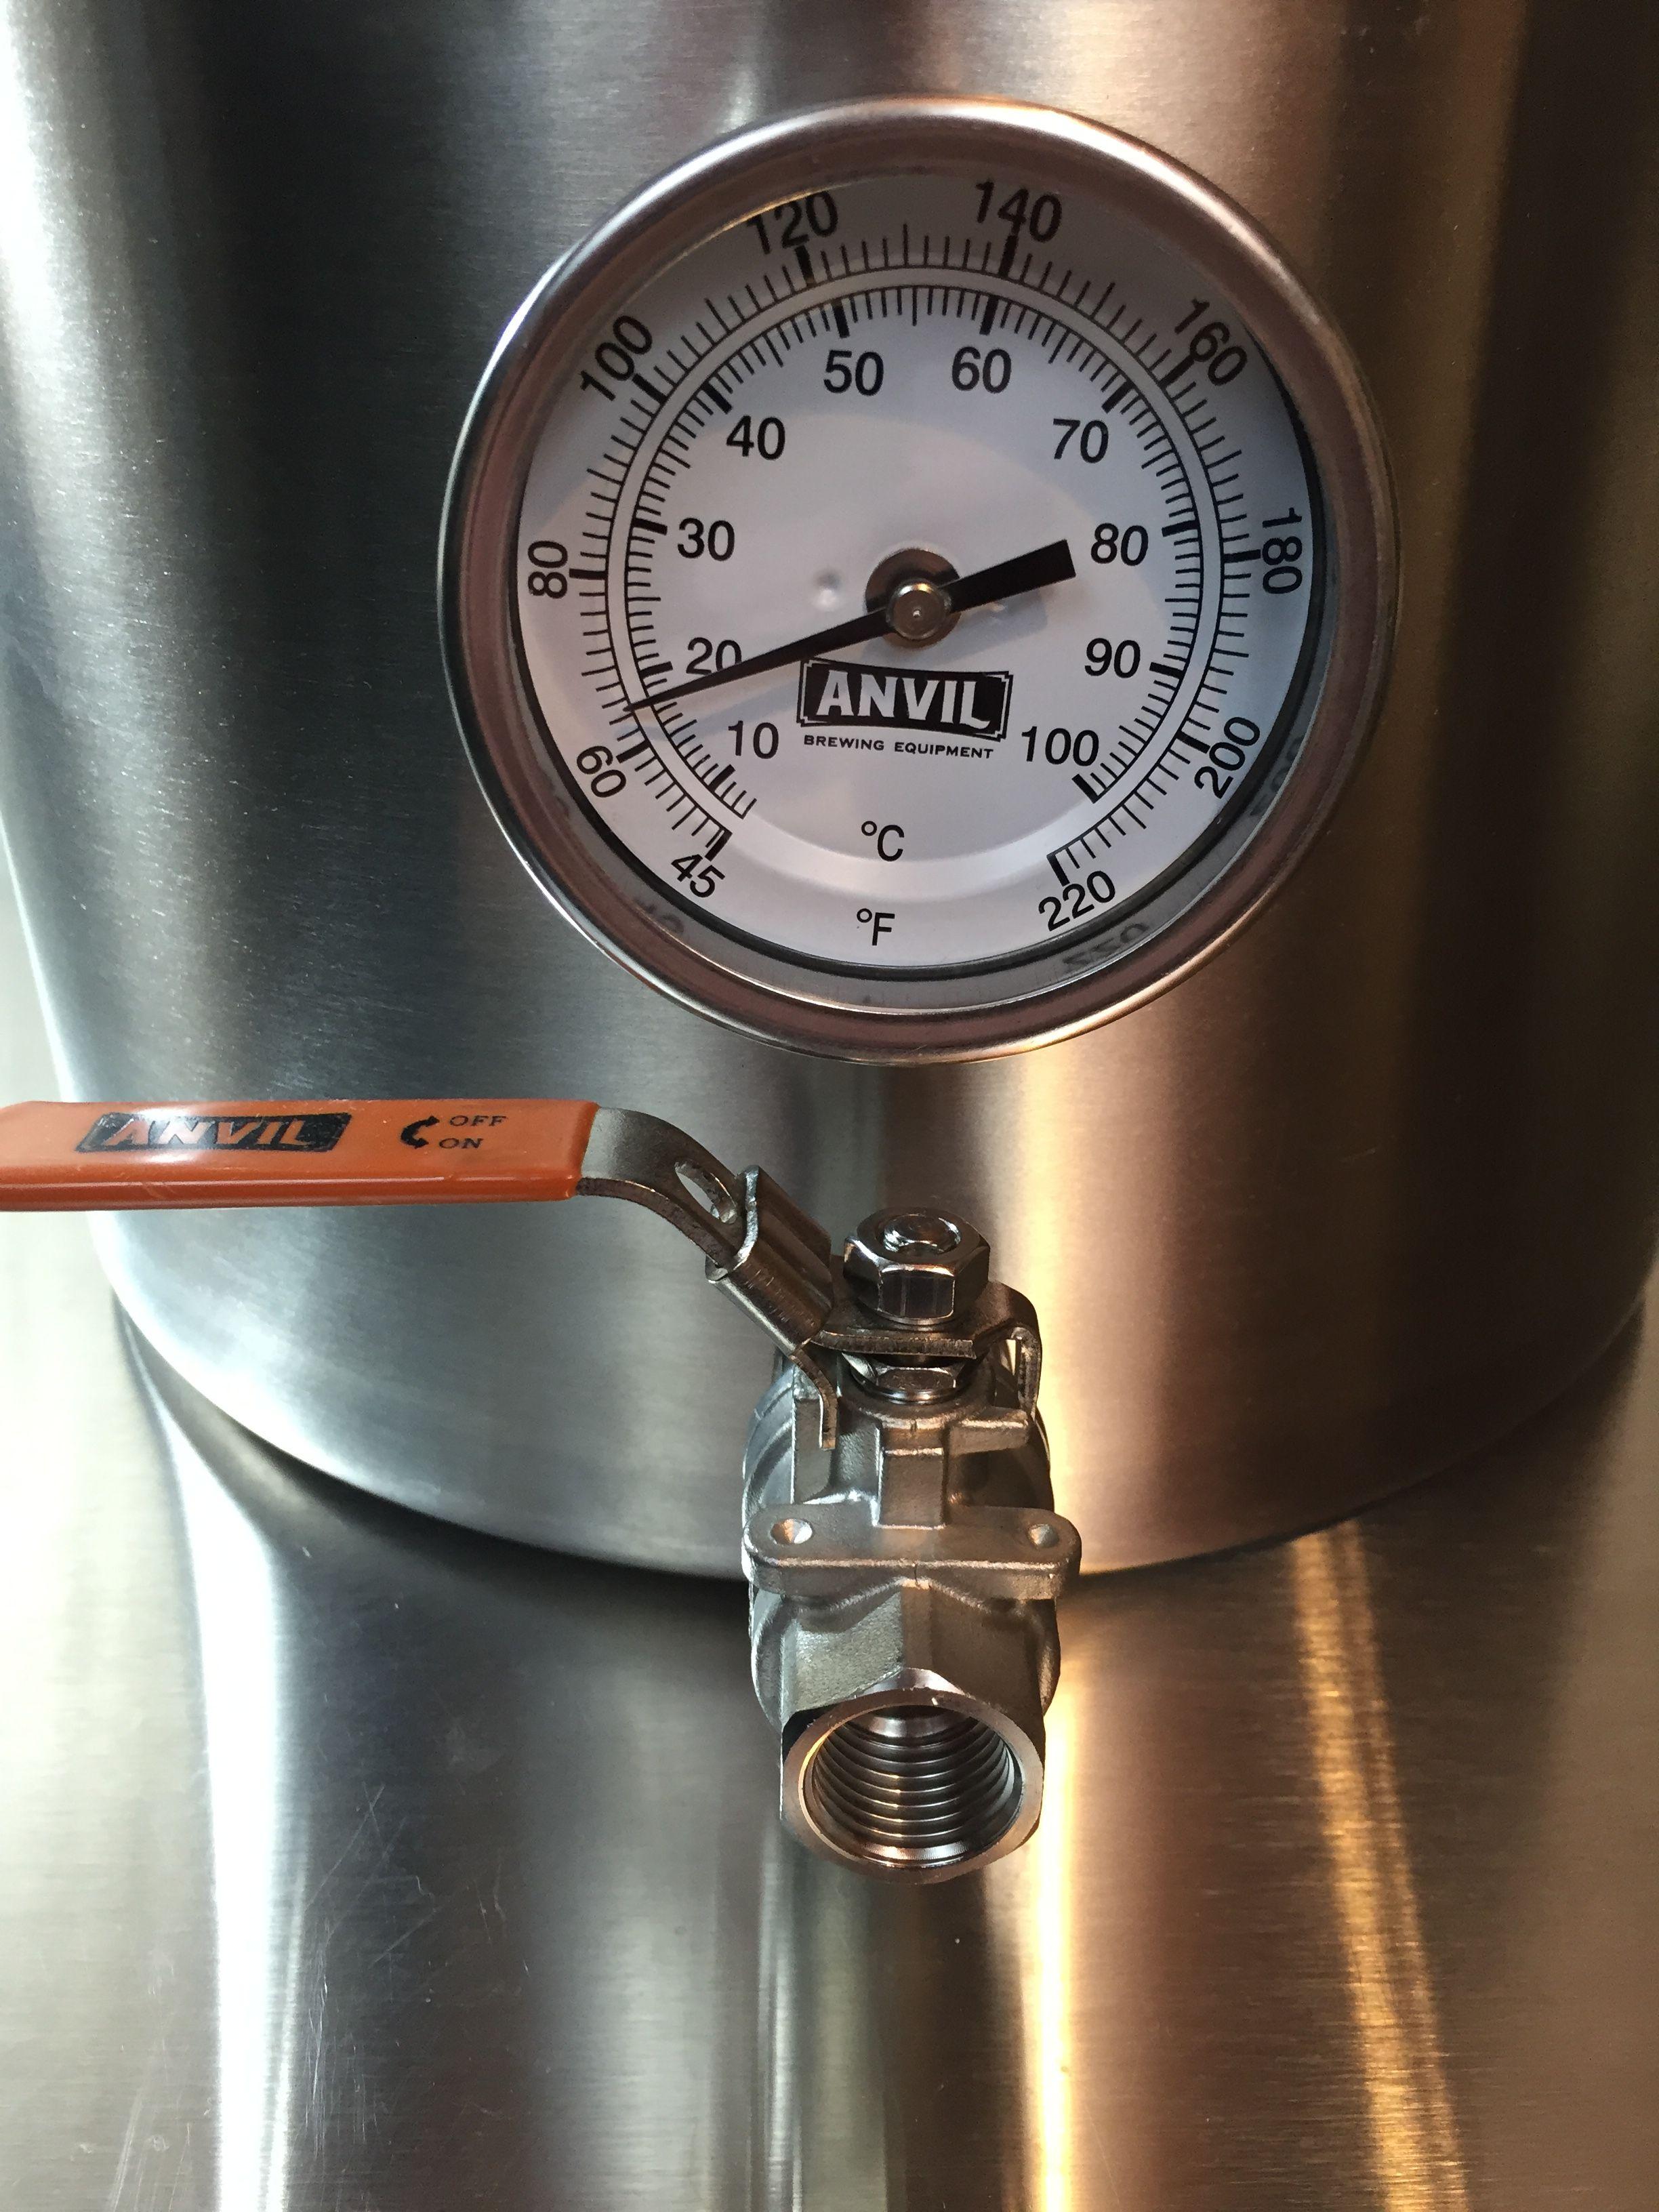 Anvil Brew Kettle - 7.5 Gallon